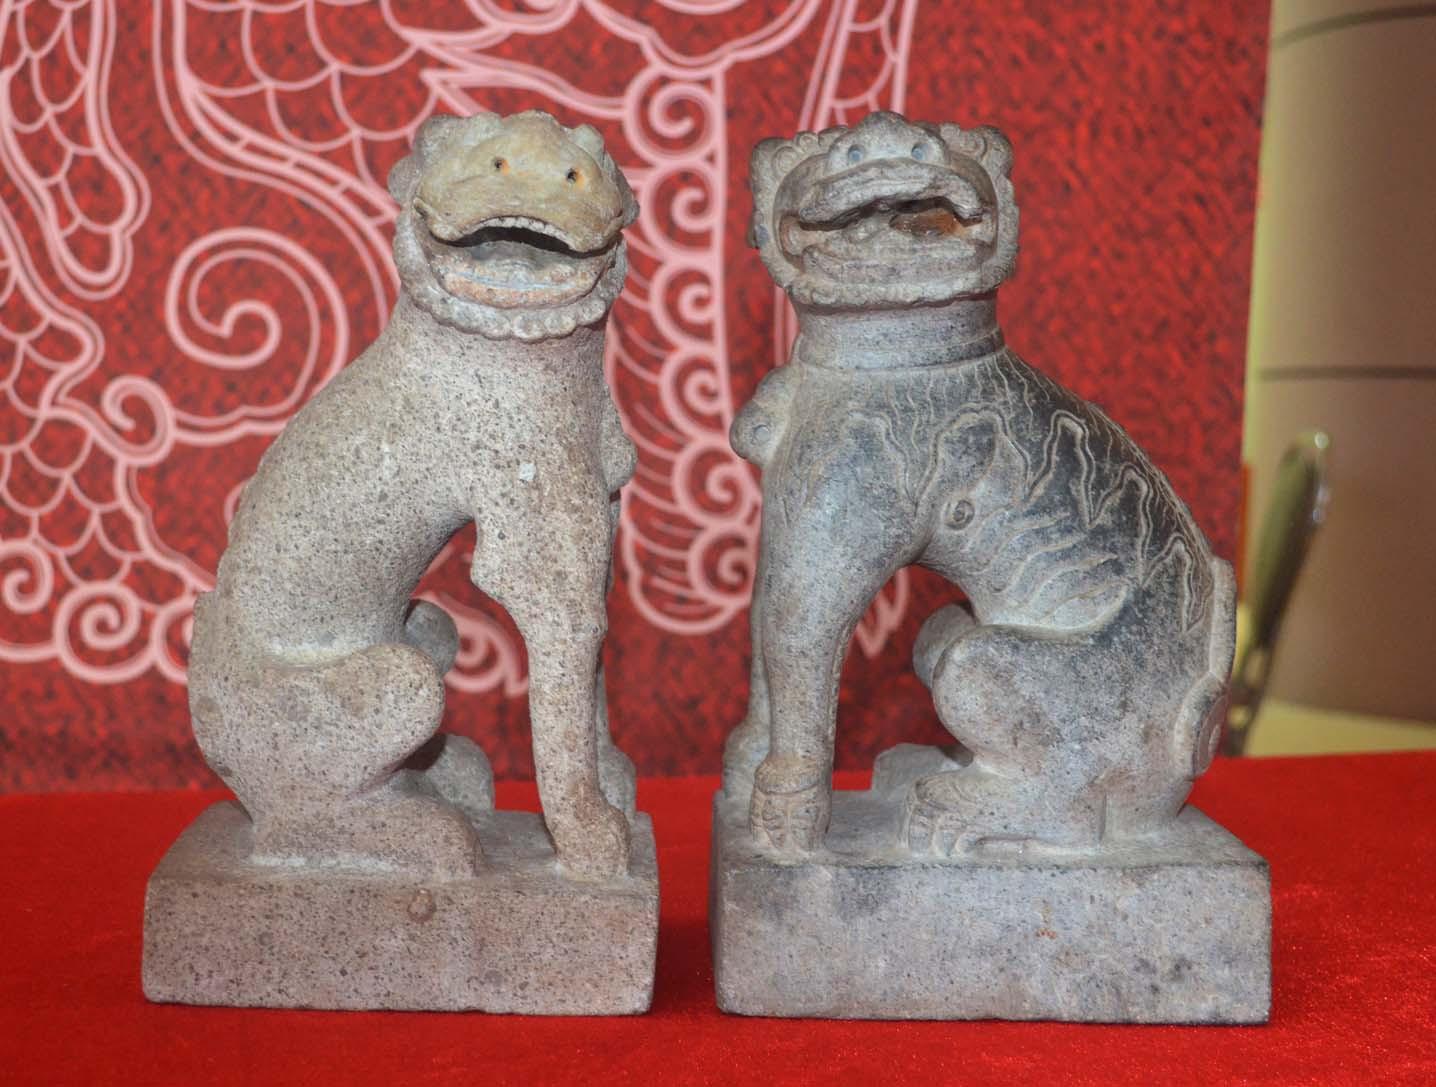 Đây là một đôi linh vật Nghê Việt cổ, được làm bằng chất liệu đá. Đặc điểm của Nghê Việt, được các nhà nghiên cứu, sưu tầm xác định bắt đầu từ hướng nhìn